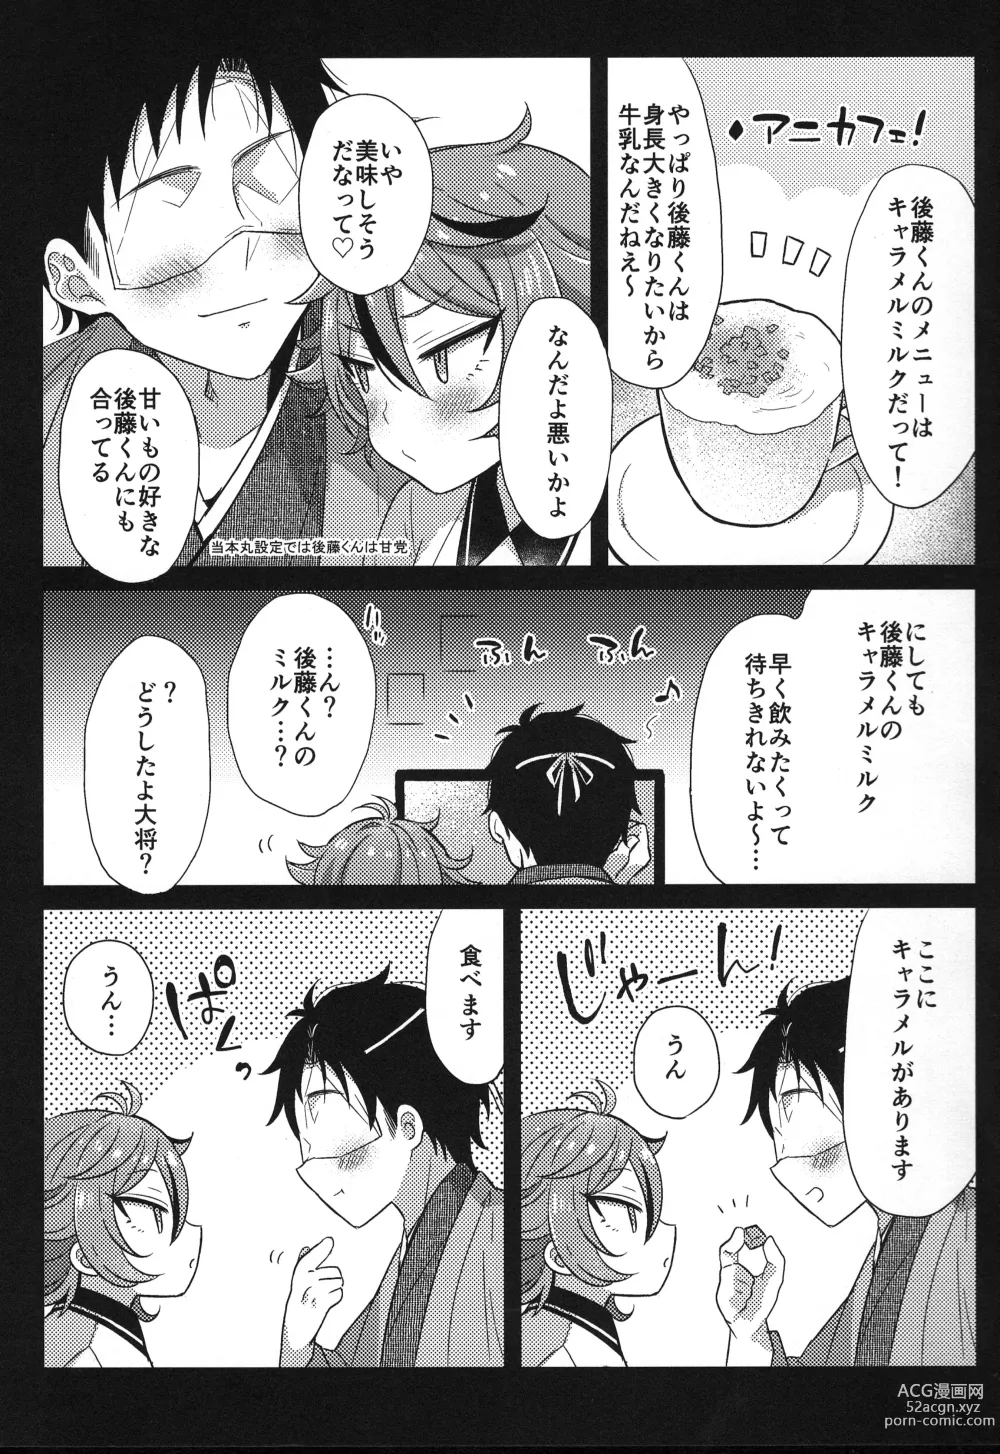 Page 196 of doujinshi Sanigoto Sairoku!